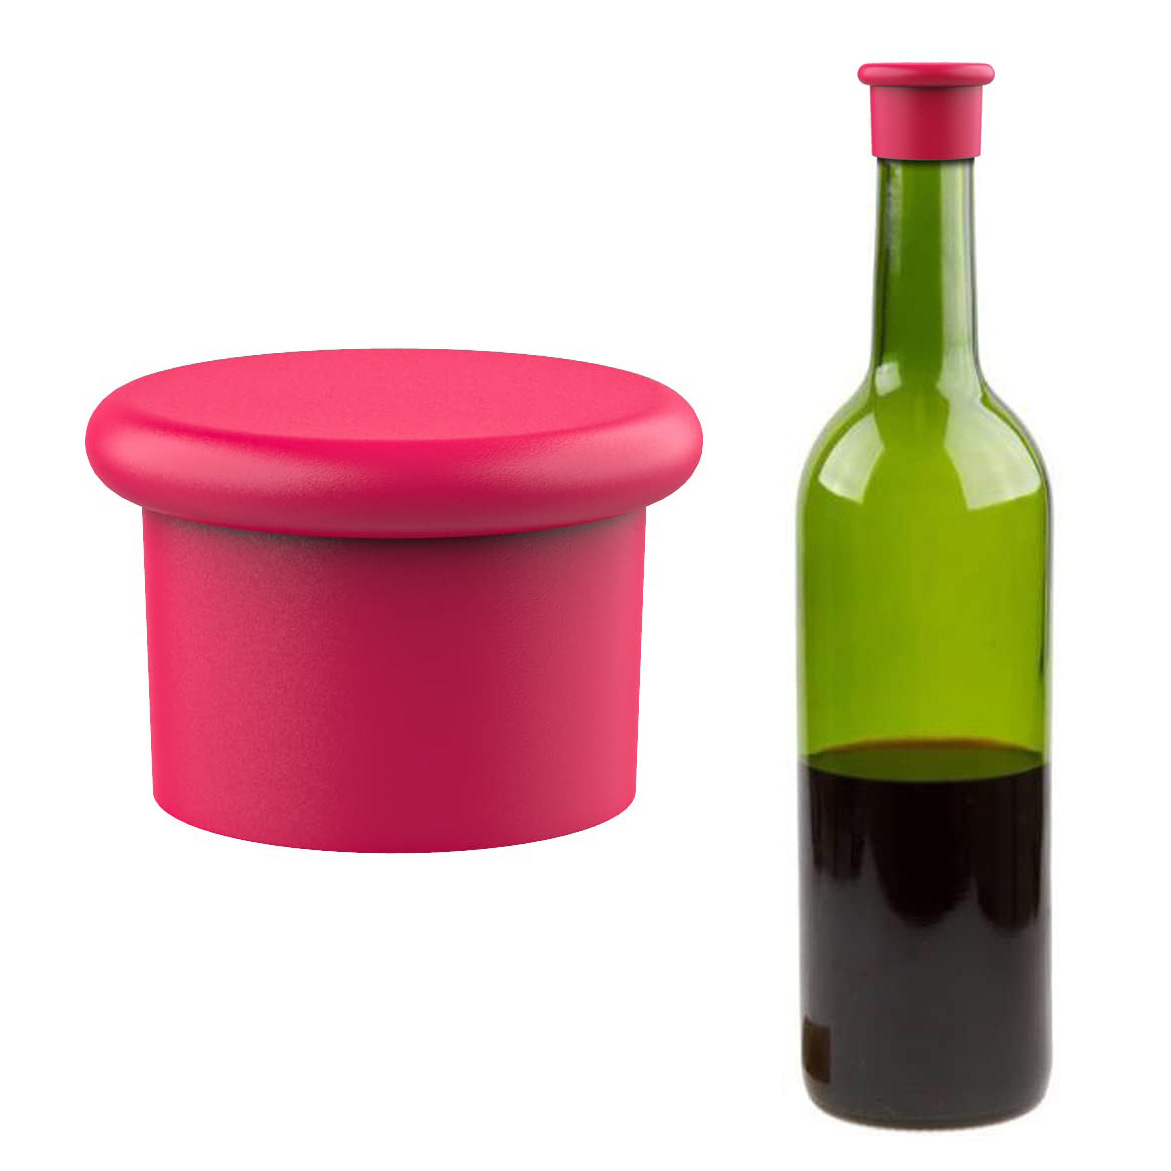 Vino para Dummies: Tapones para las botellas de vino, ¿corcho o silicona?